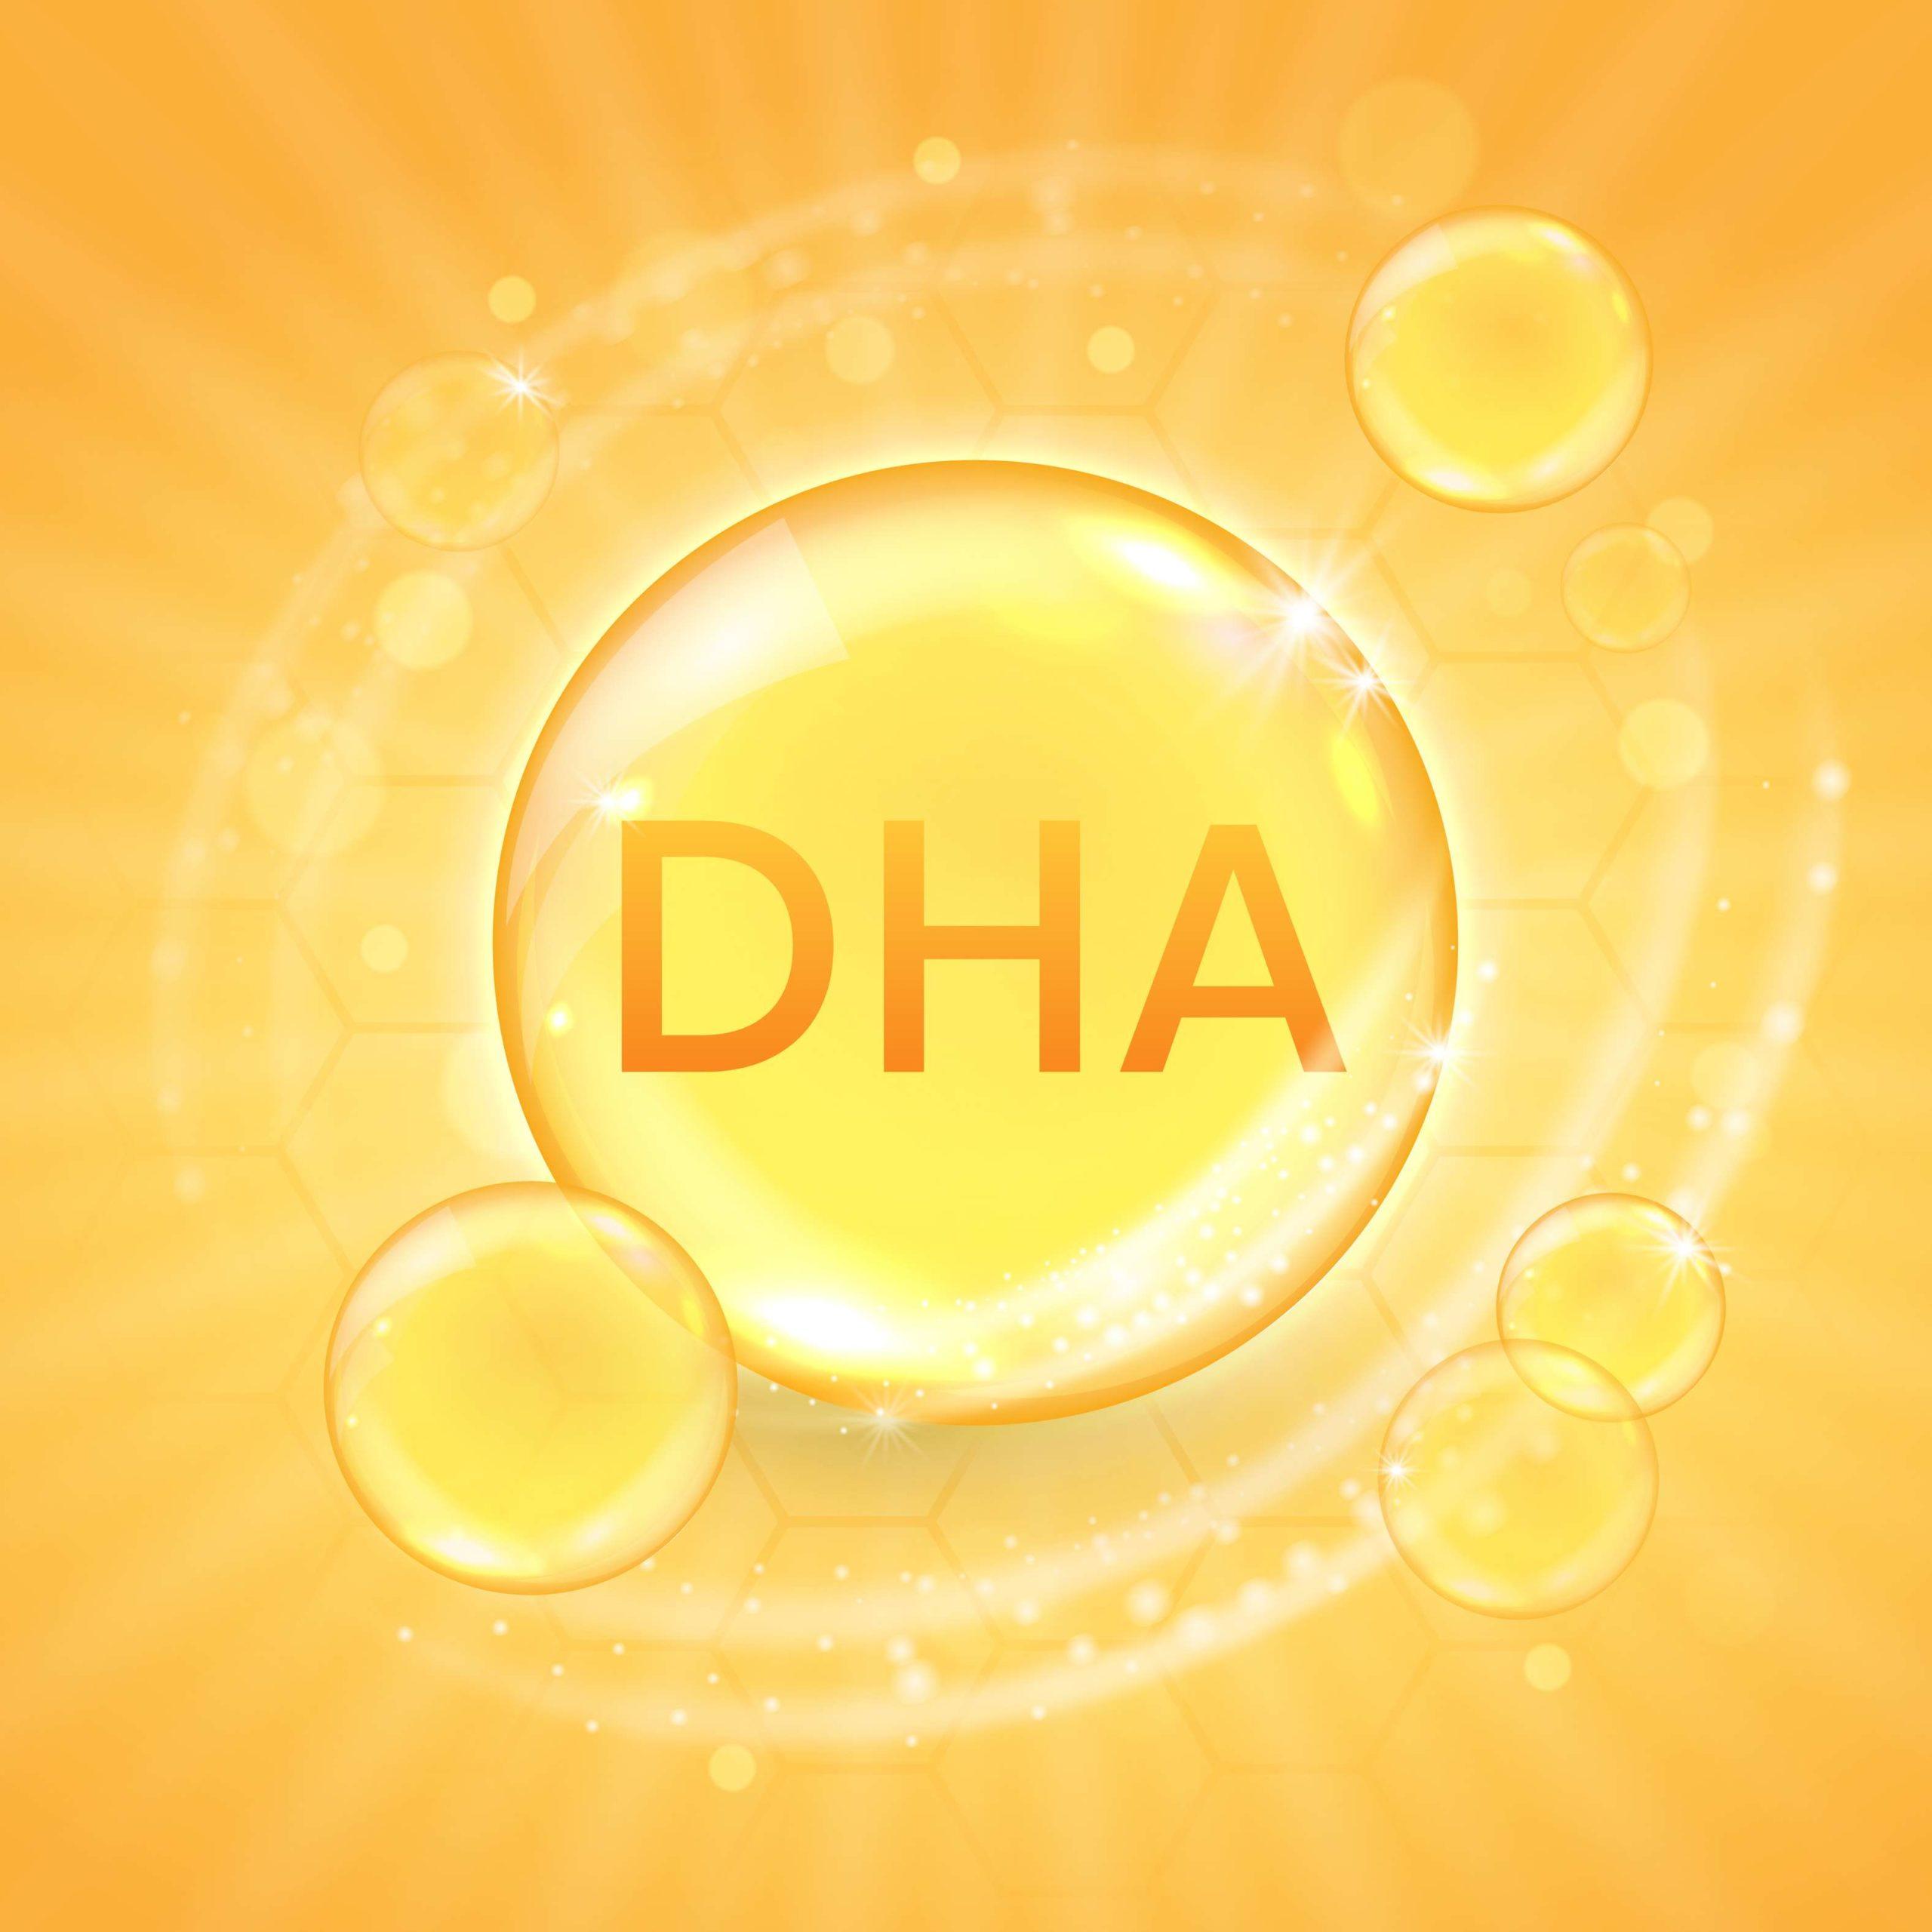 DHA aus Omega-3-Fettsäure-Ergänzung, glänzende Öl-Vitaminkapsel. Designvorlage für Fischöltröpfchen für Werbung oder Branding. Realistische Vektorillustration der goldenen Essenzblase